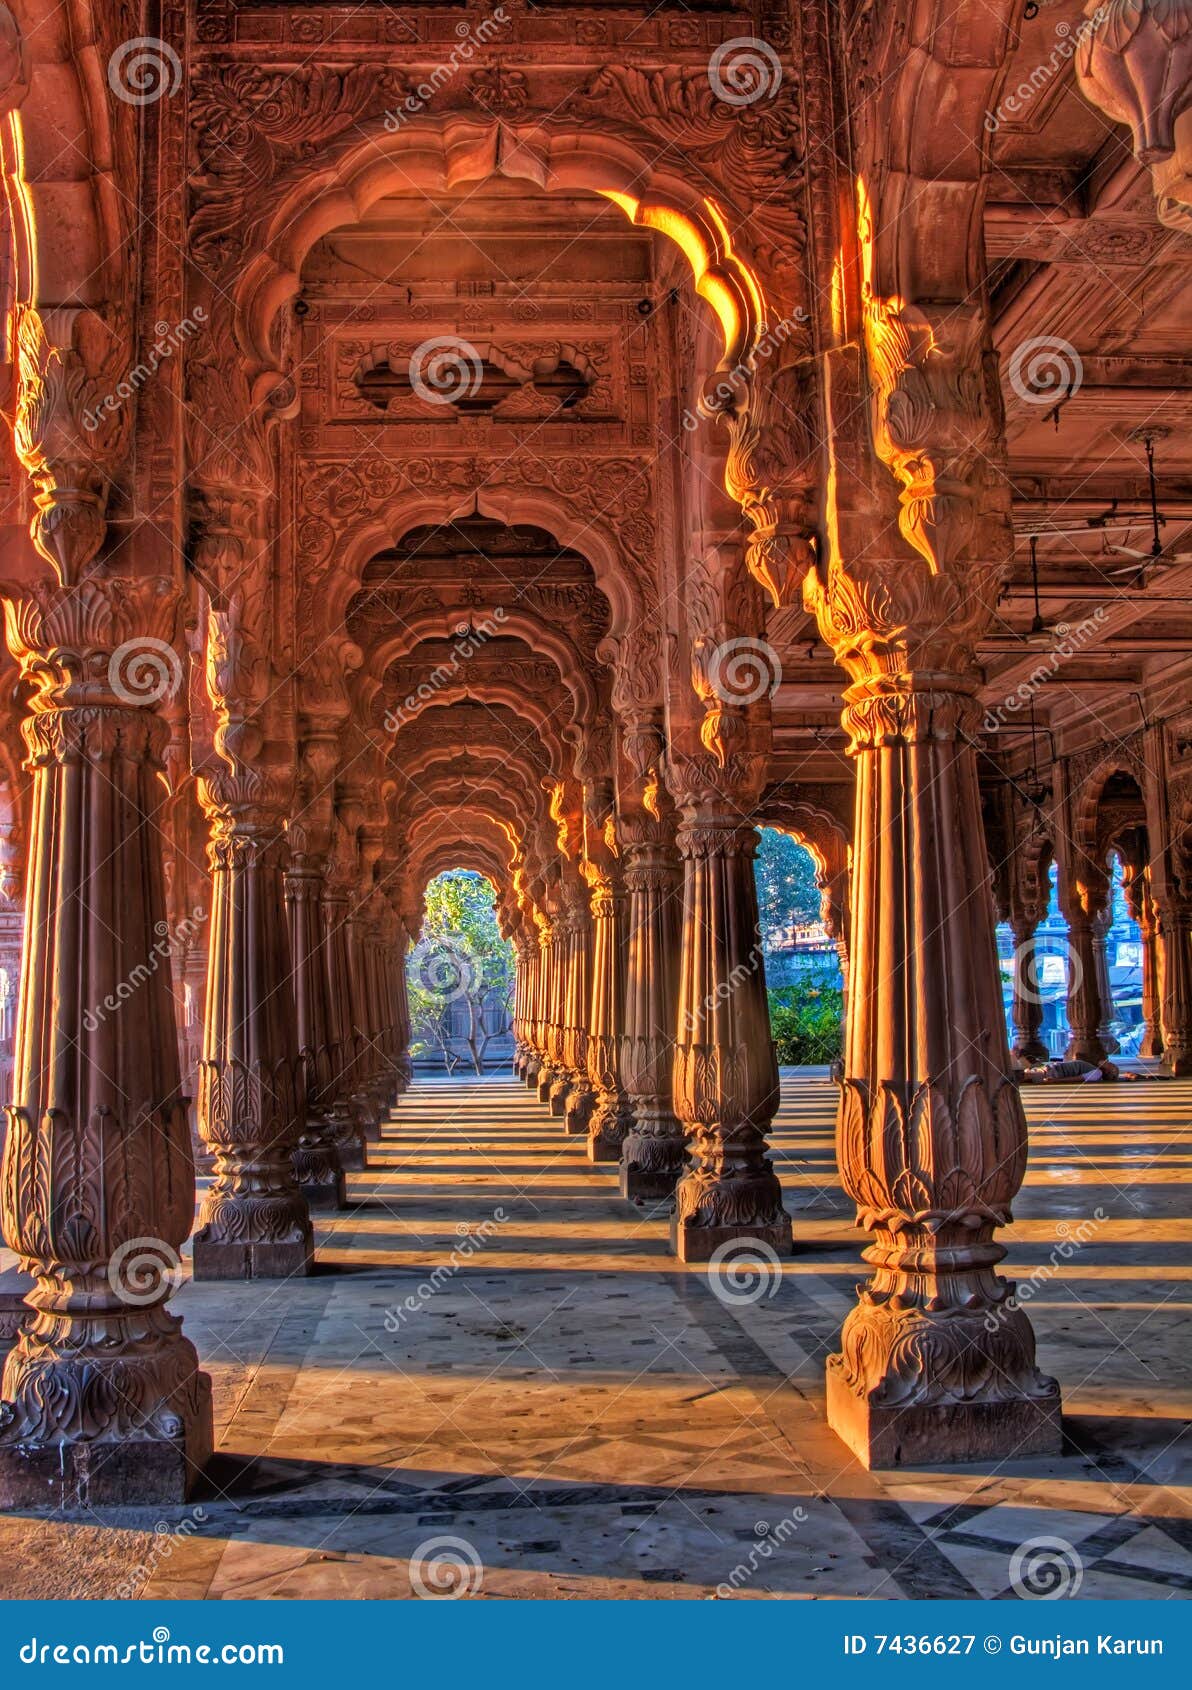 indore rajwada, the royal palace of indore, india